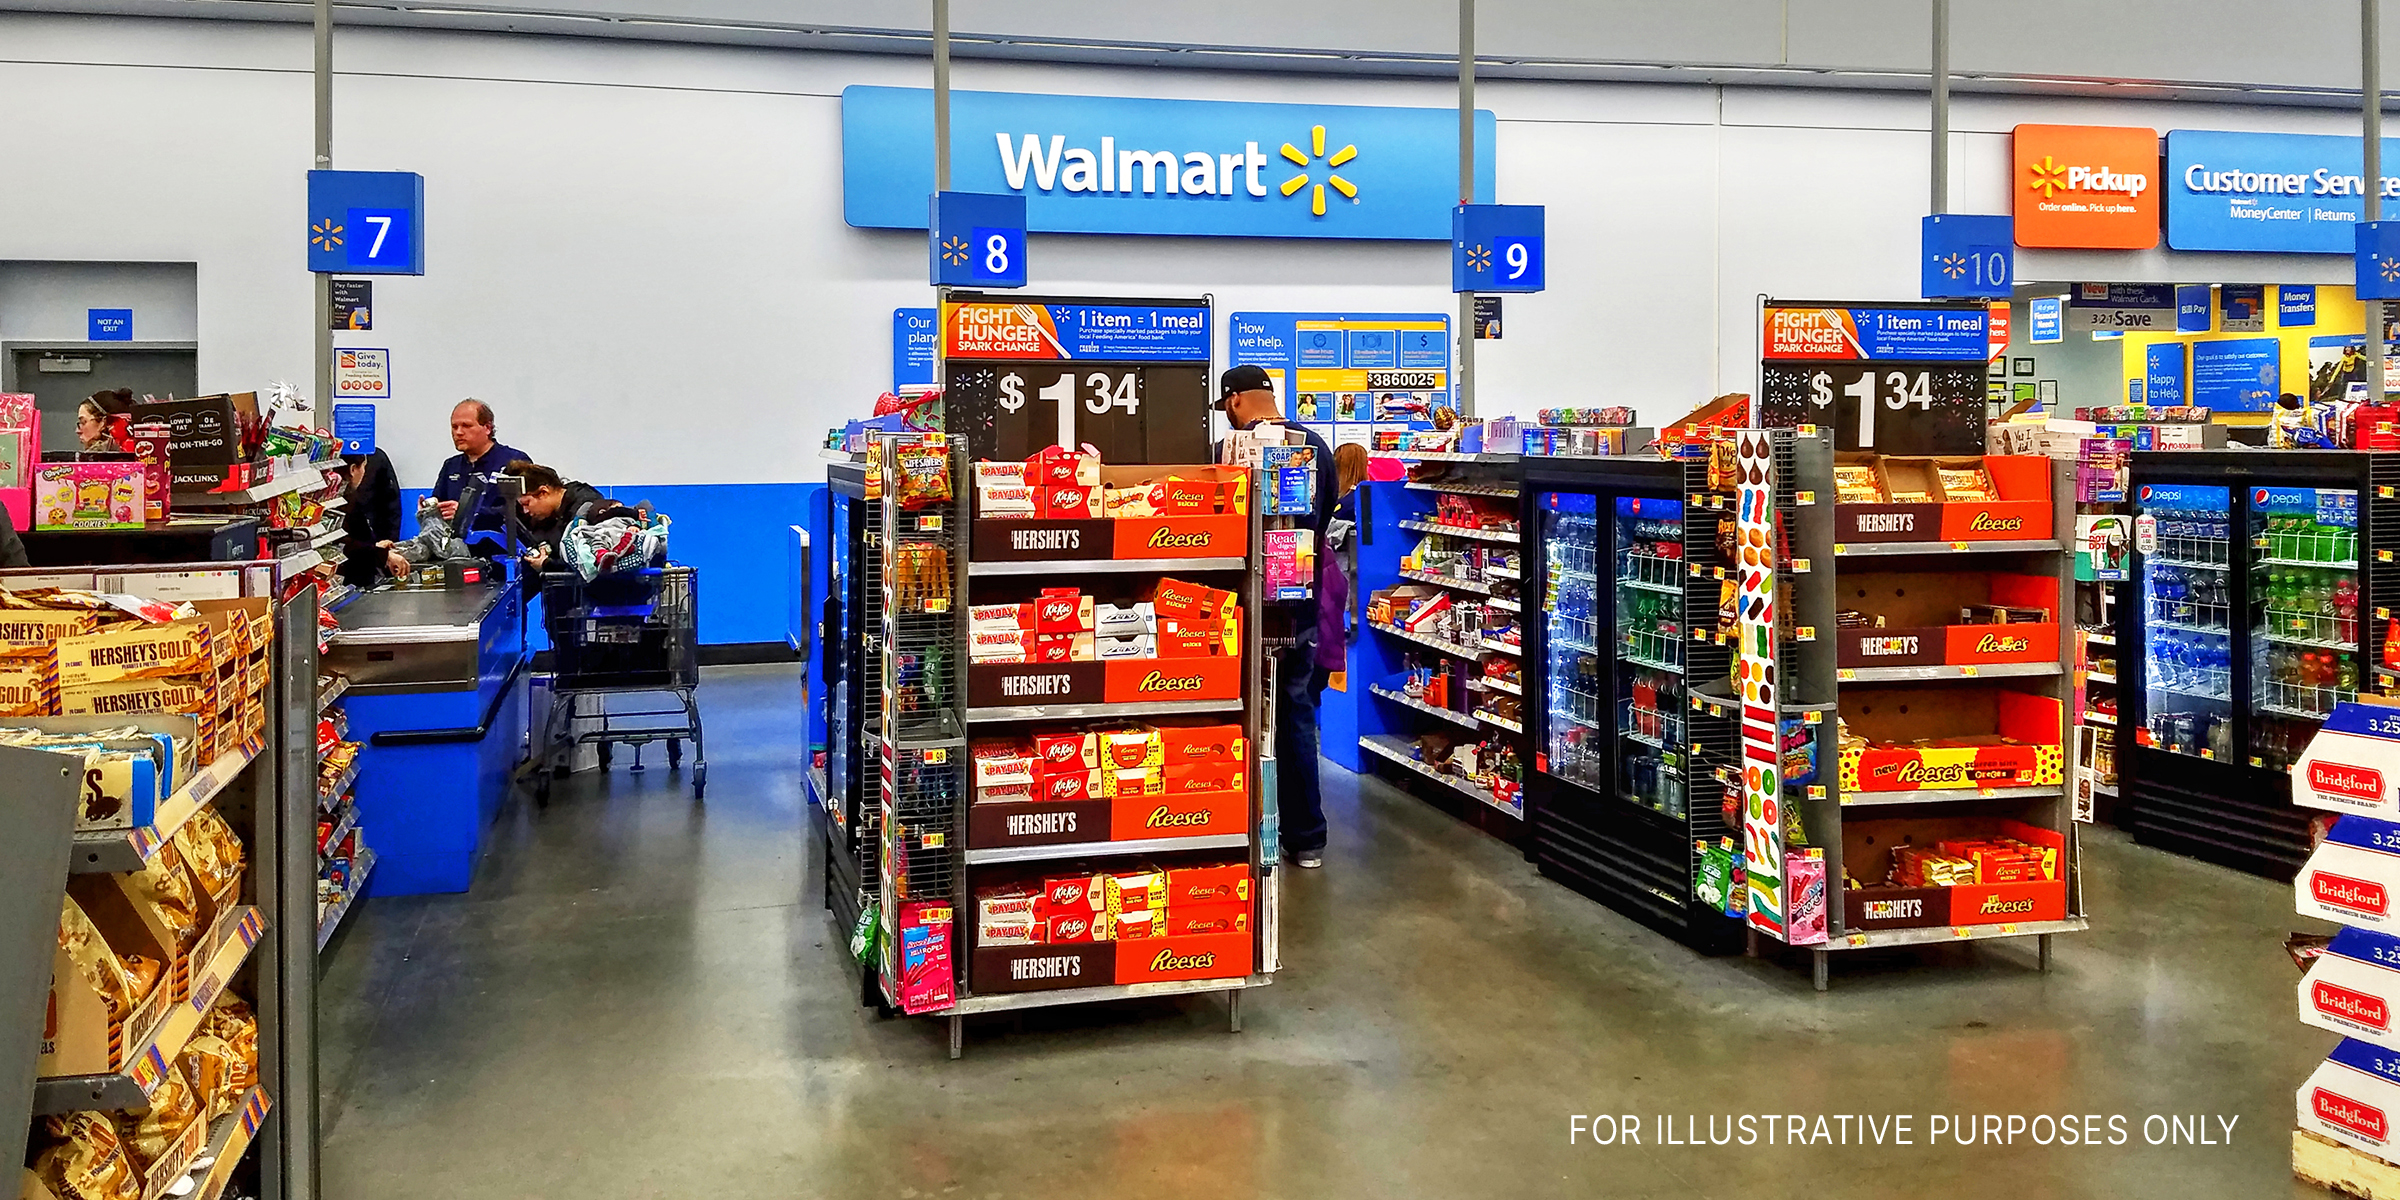 A Walmart store | Source: Shutterstock